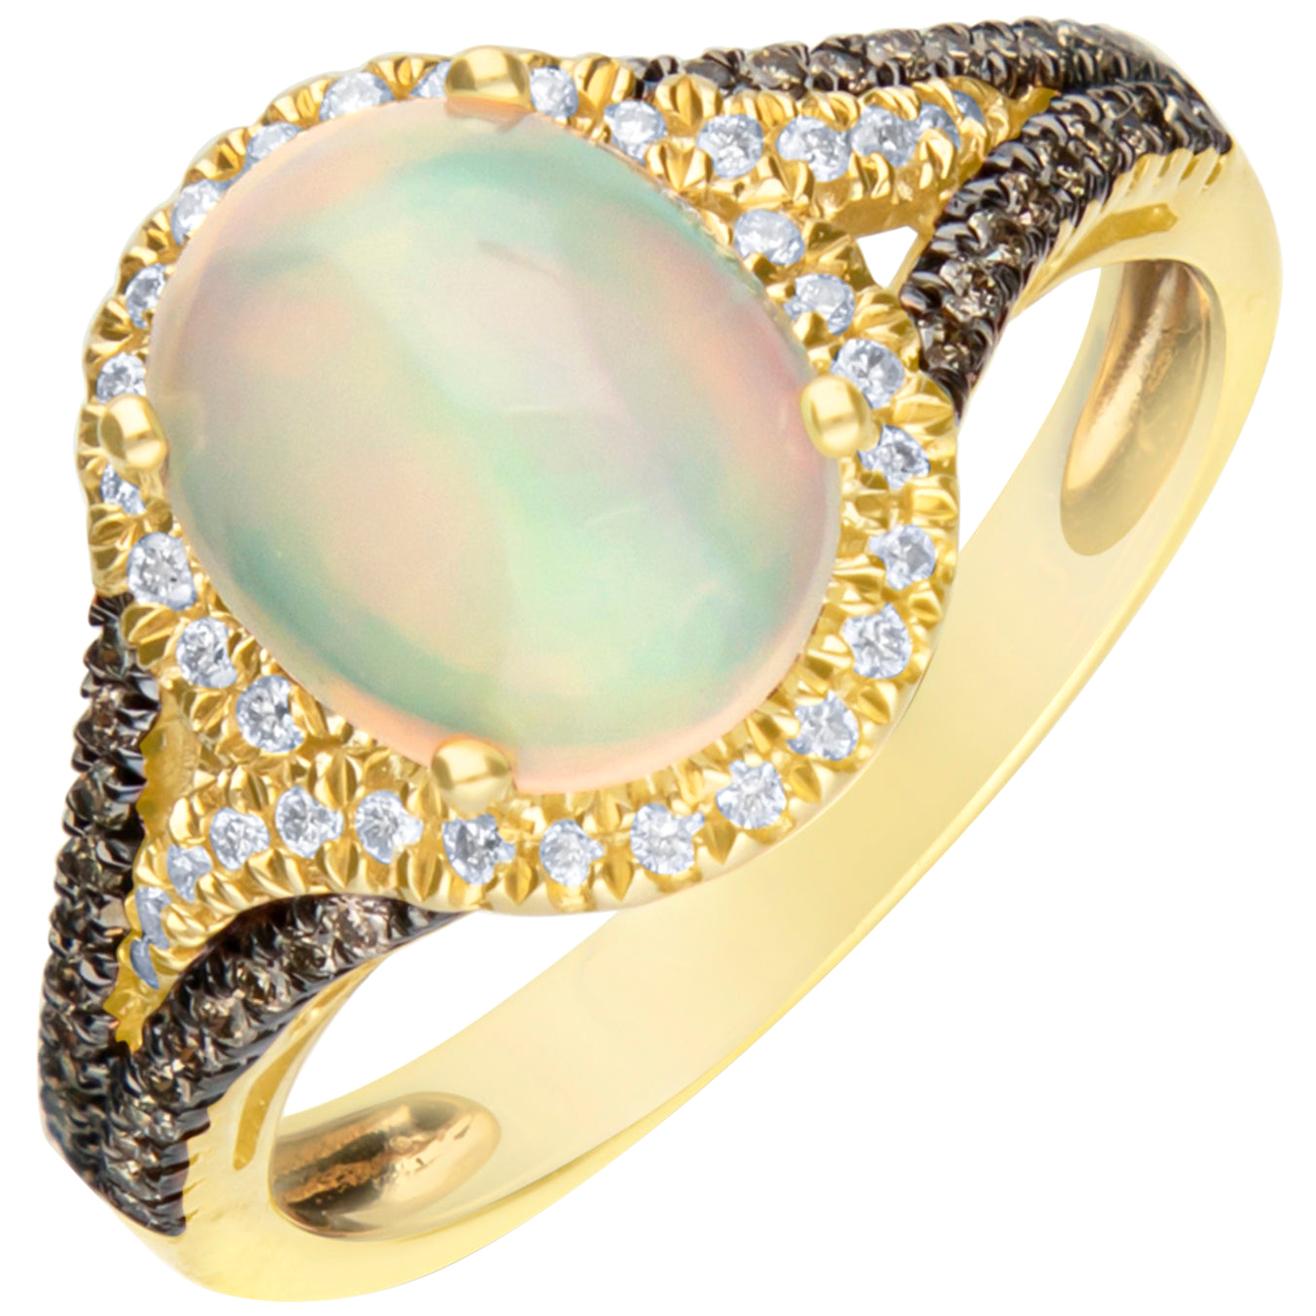 1.71 Carat Natural Opal and Diamond 14 Karat Yellow Gold Ring